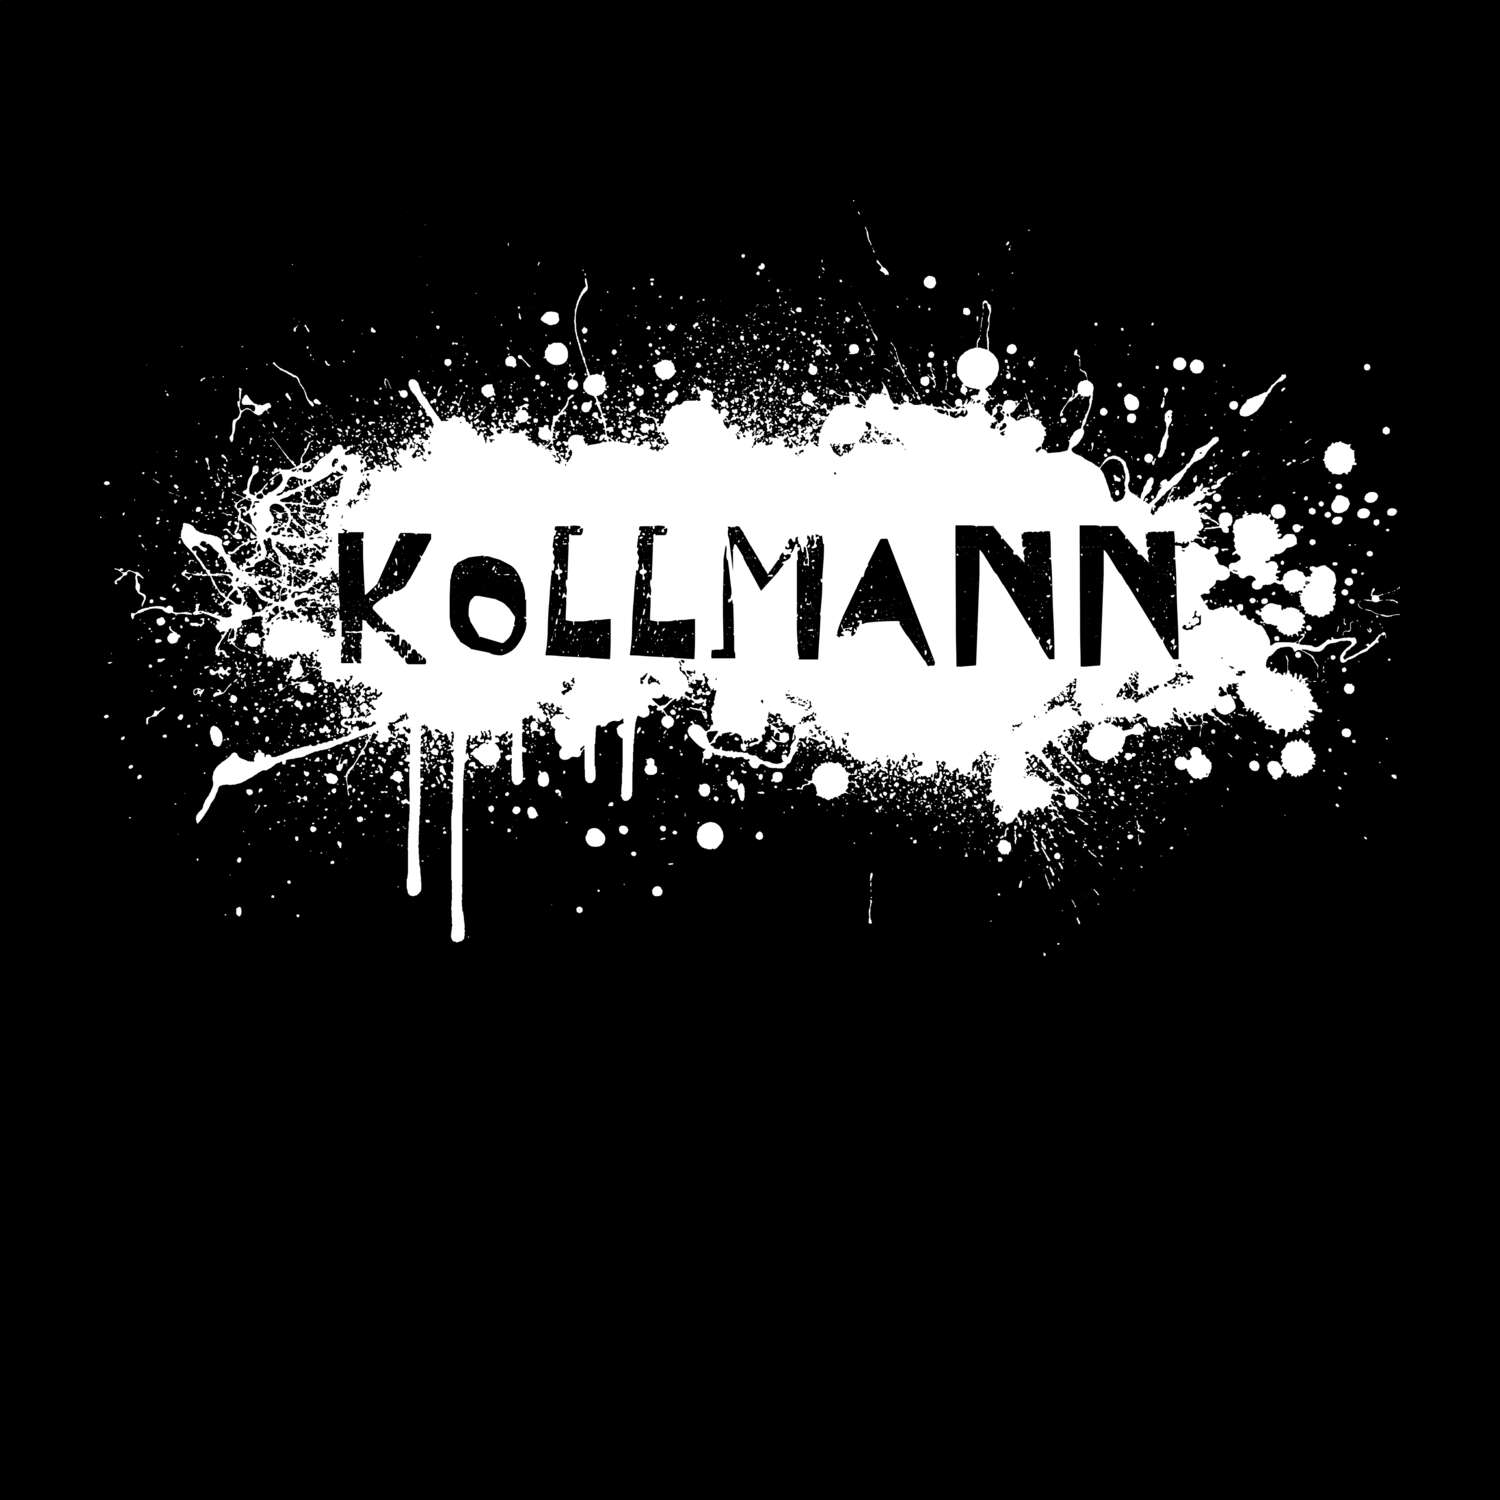 Kollmann T-Shirt »Paint Splash Punk«